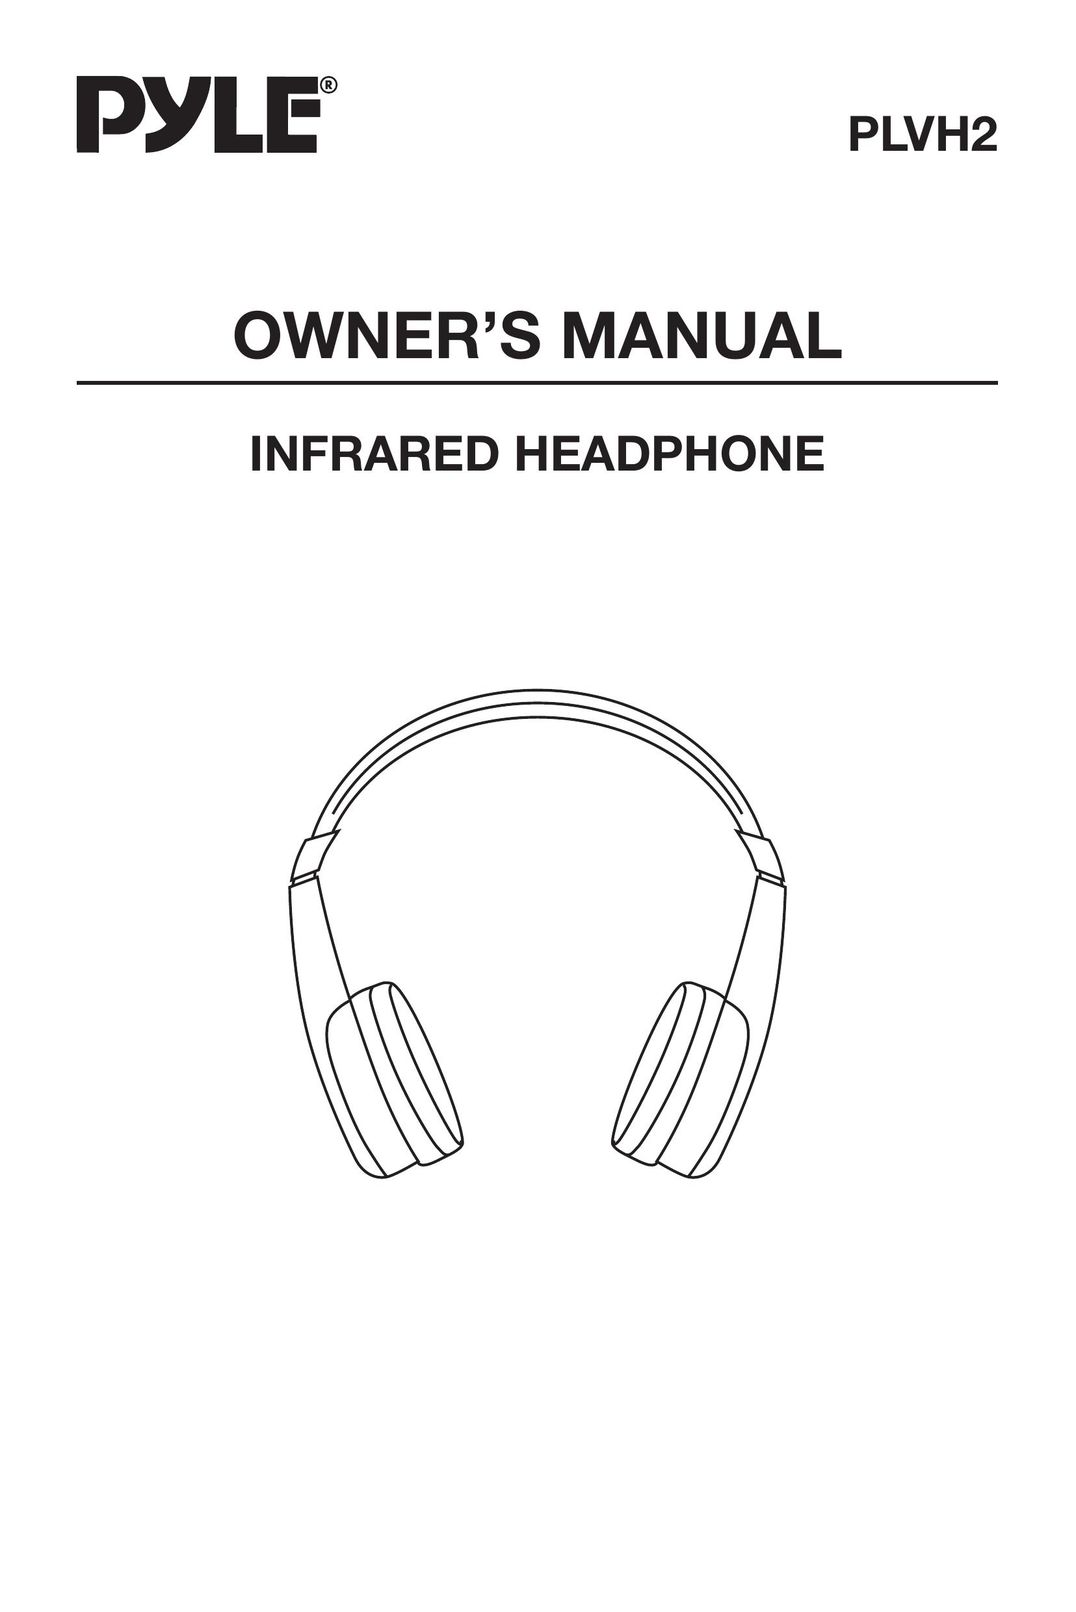 Radio Shack PLVH2 Headphones User Manual